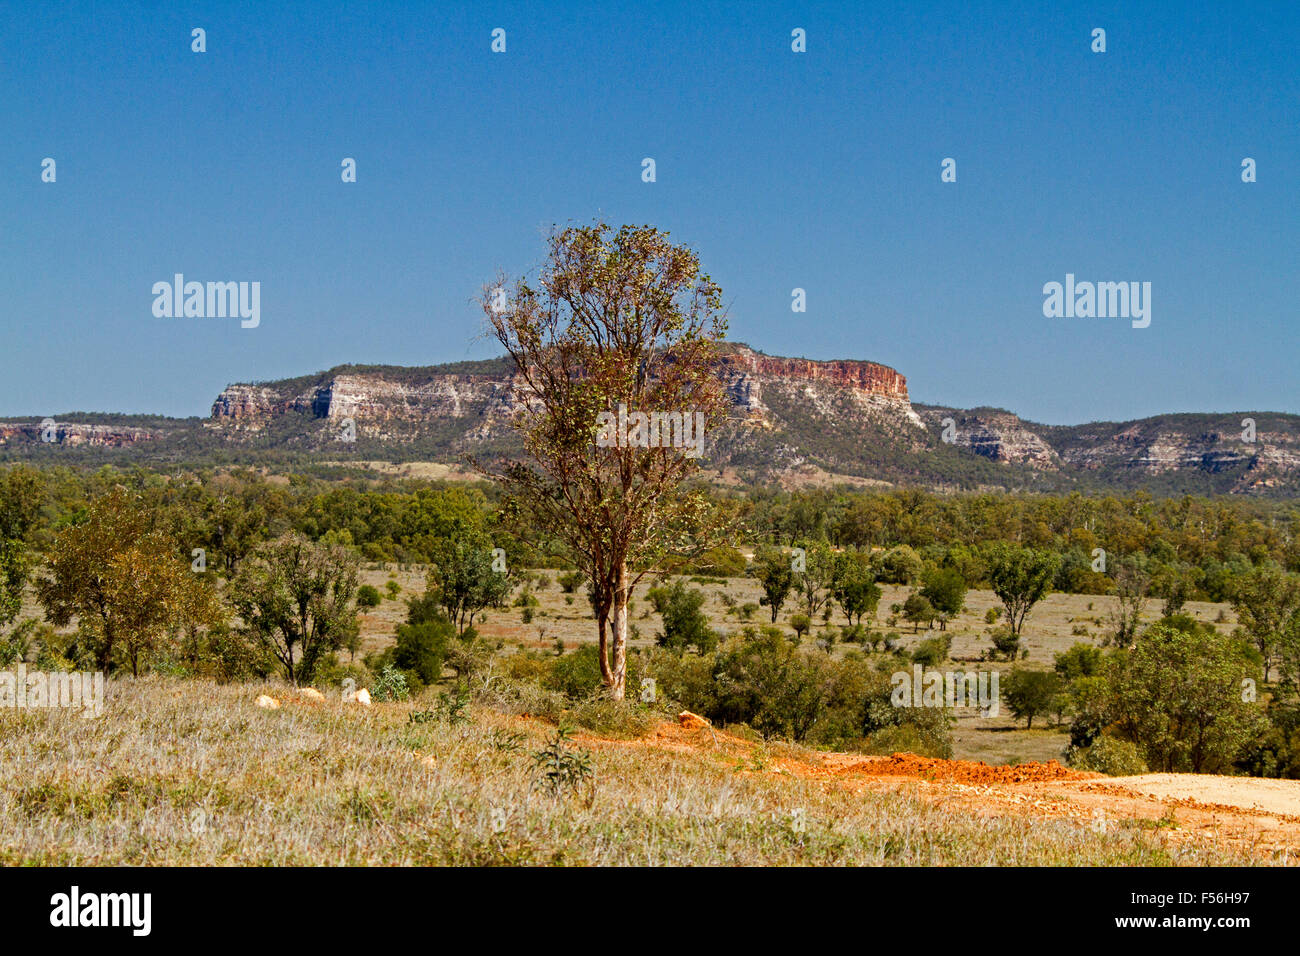 Riesige Outback-Landschaft mit Carnarvon reicht von Salvator Rosa Nationalpark steigt in blauen Himmel über Baum getarnte Ebenen, Australien Stockfoto